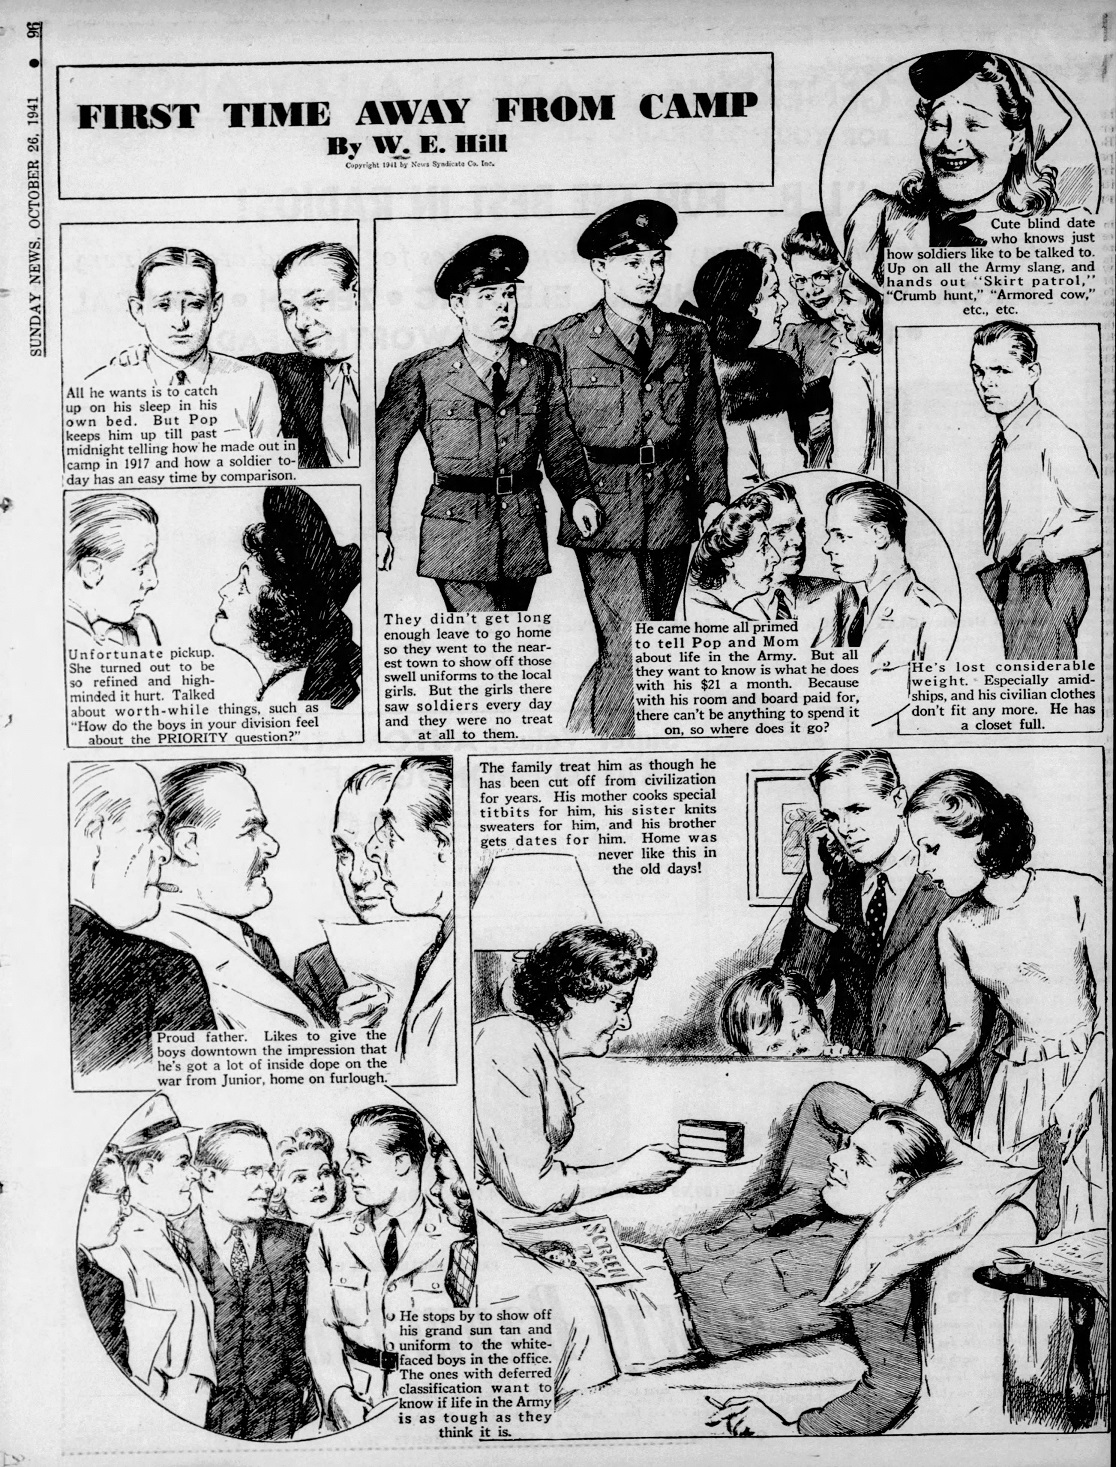 Daily_News_Sun__Oct_26__1941_(1).jpg